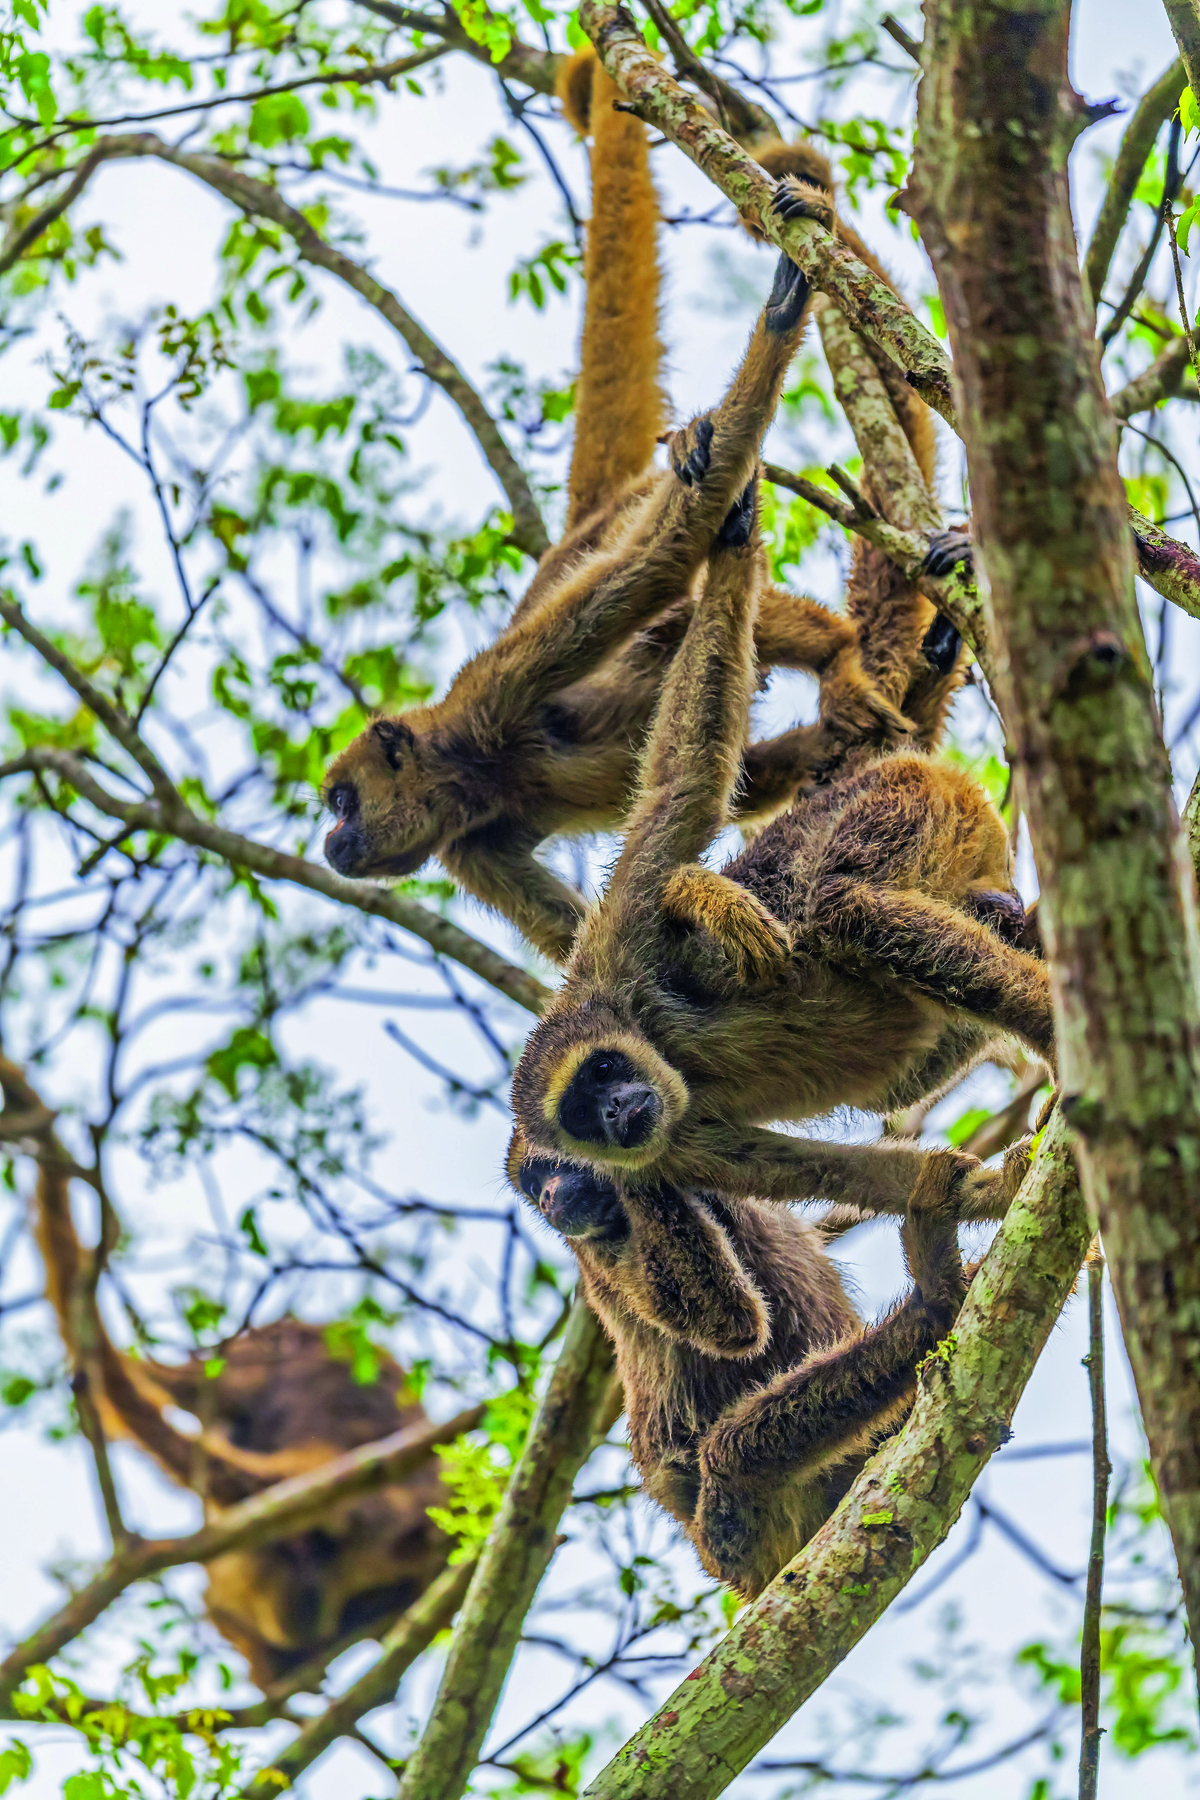 Fotografia. Destaque para um bando de macacos de pelagem amarronzada e rostos escuros, dependurados em galhos de árvores.